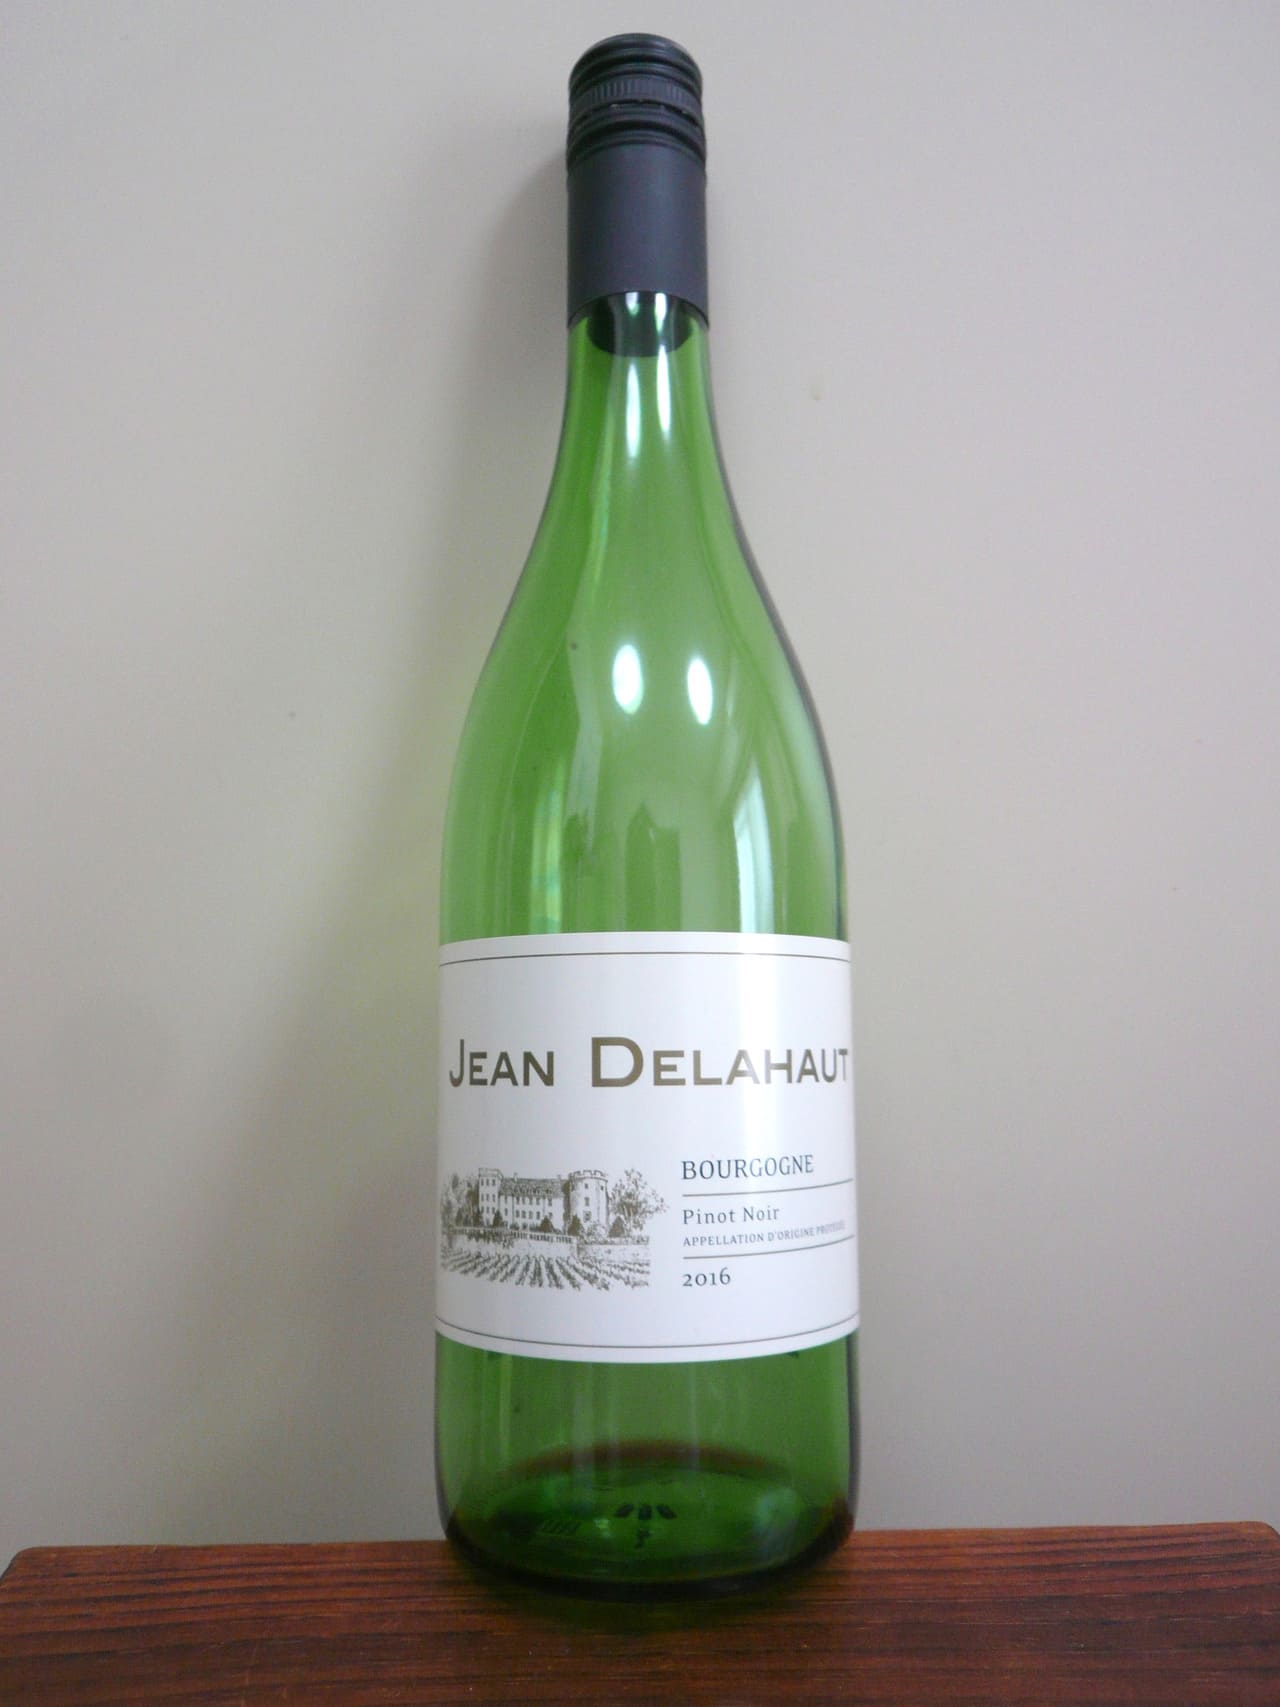 Jean Delahaut Bourgogne Pinot Noir